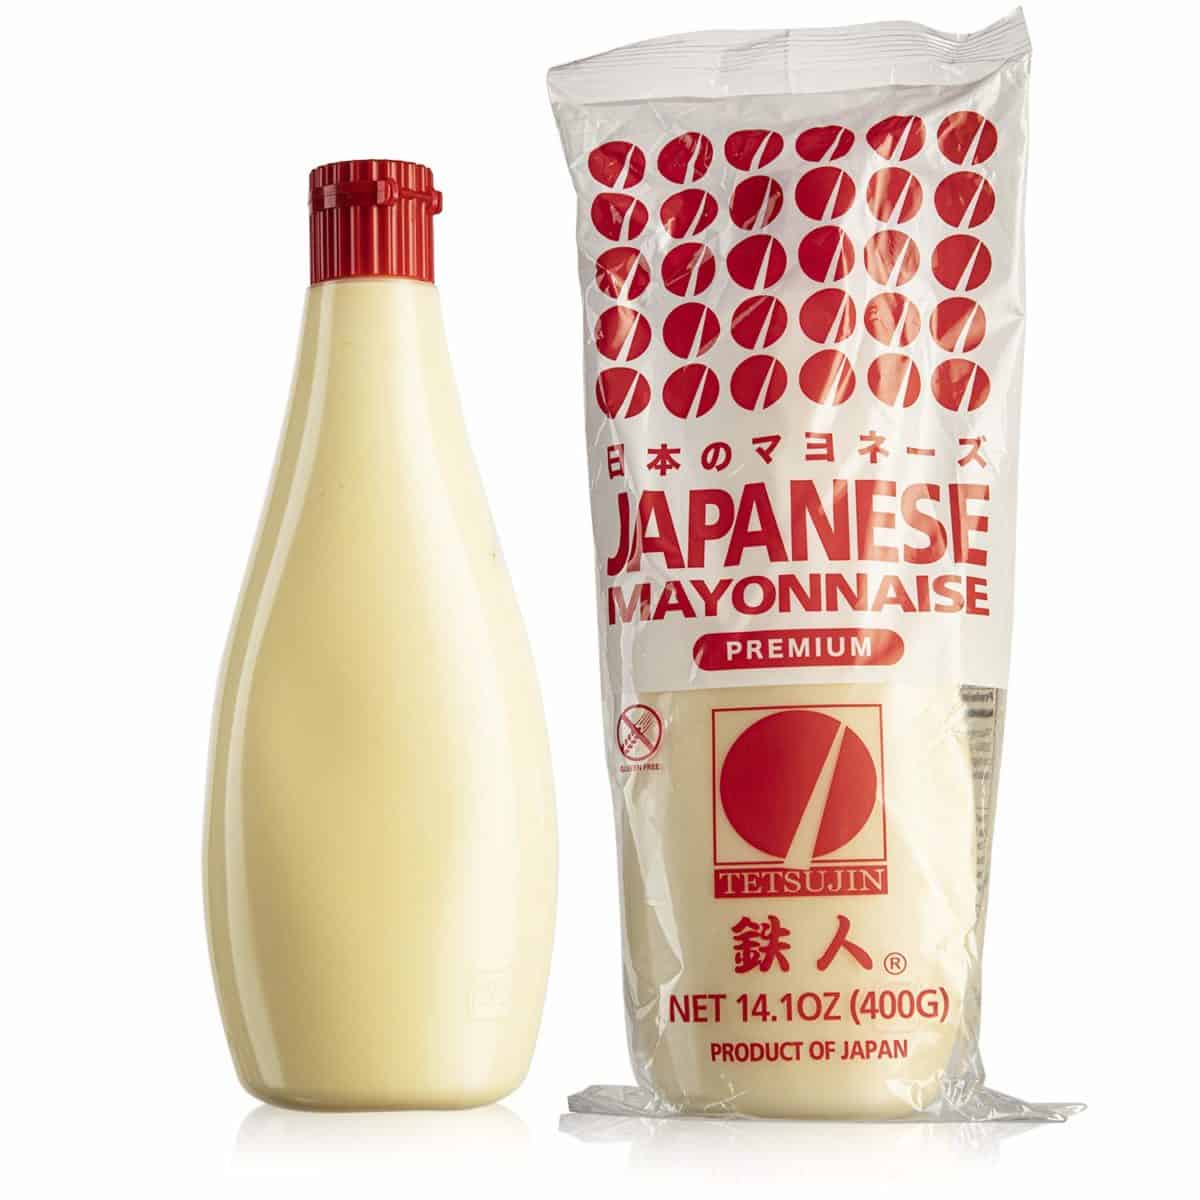 kewpie mayonnaise japonaise